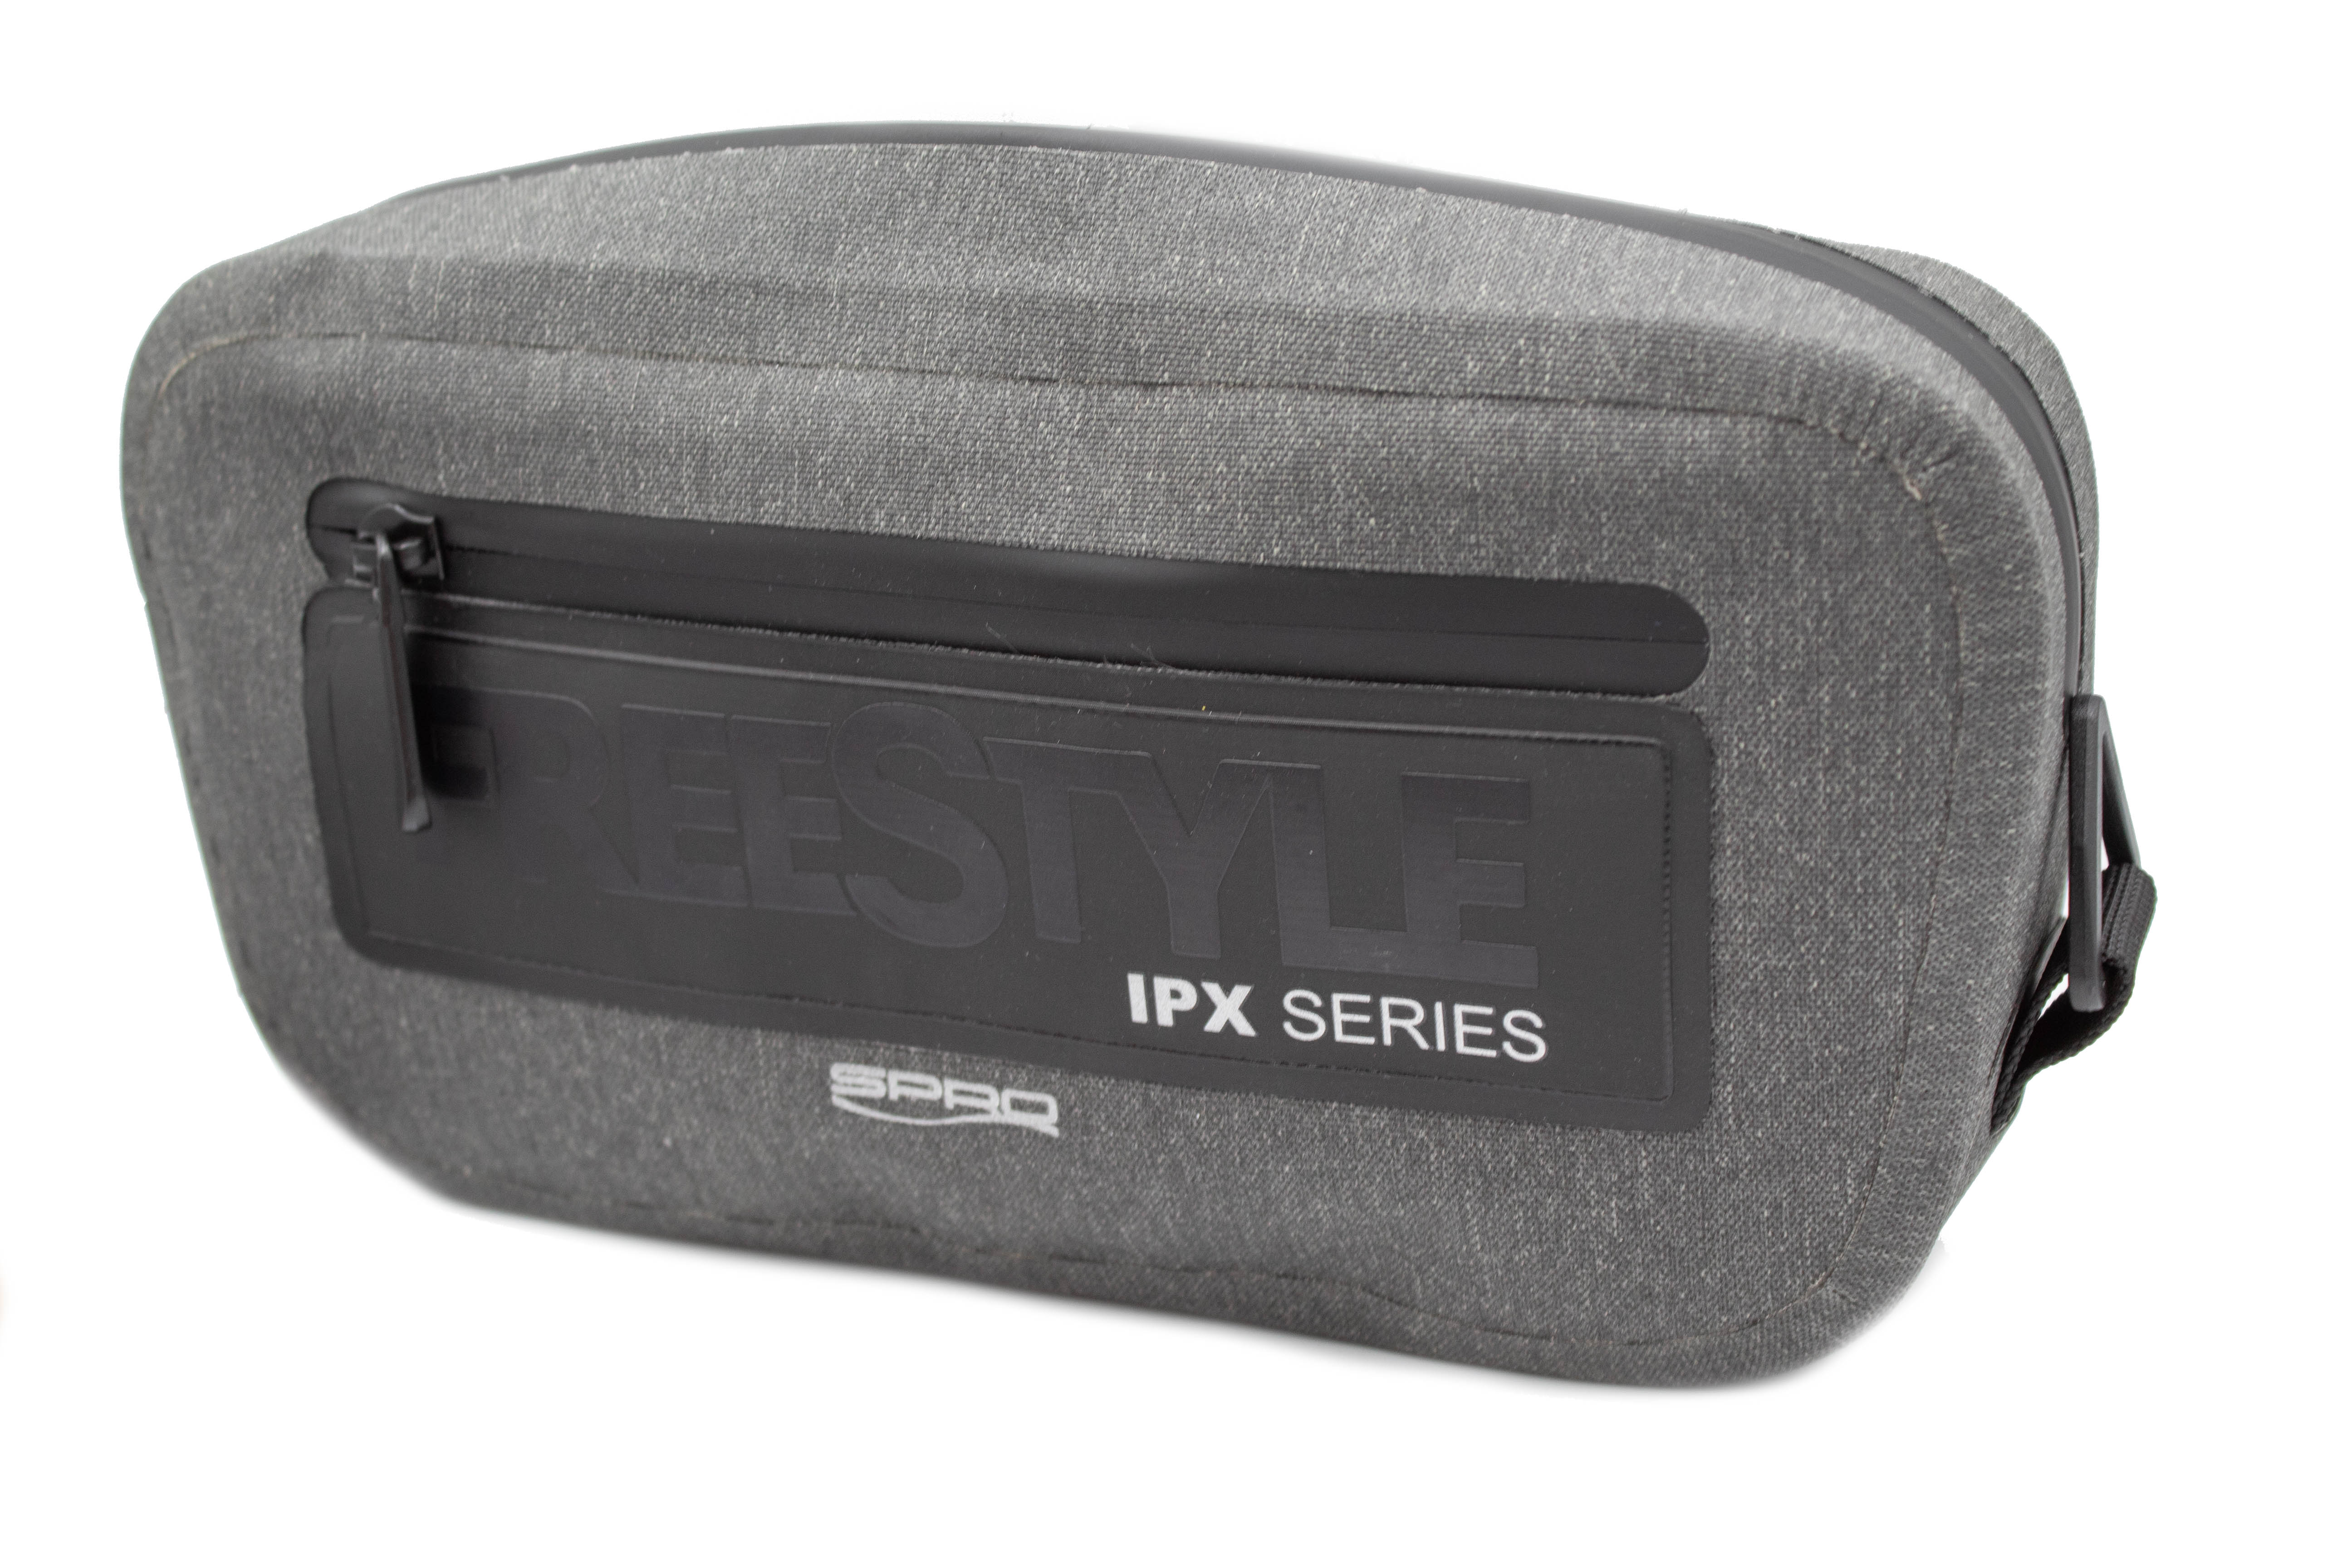 Сумка SPRO Freestyle IPX поясная series belt